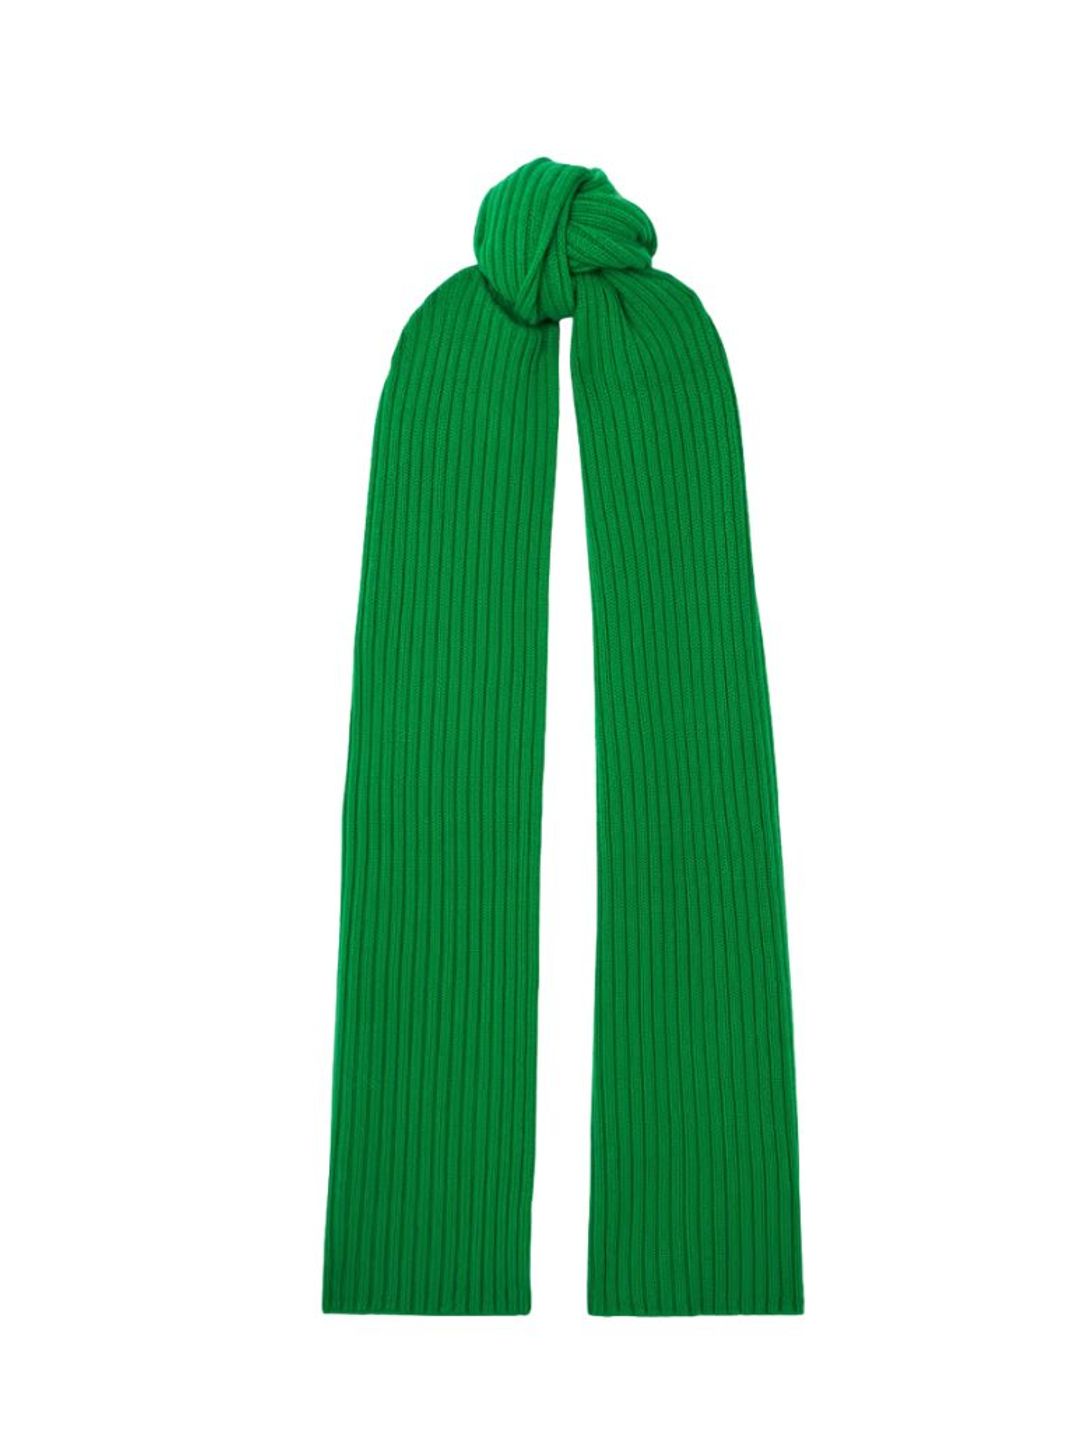 Arch4 green scarf 